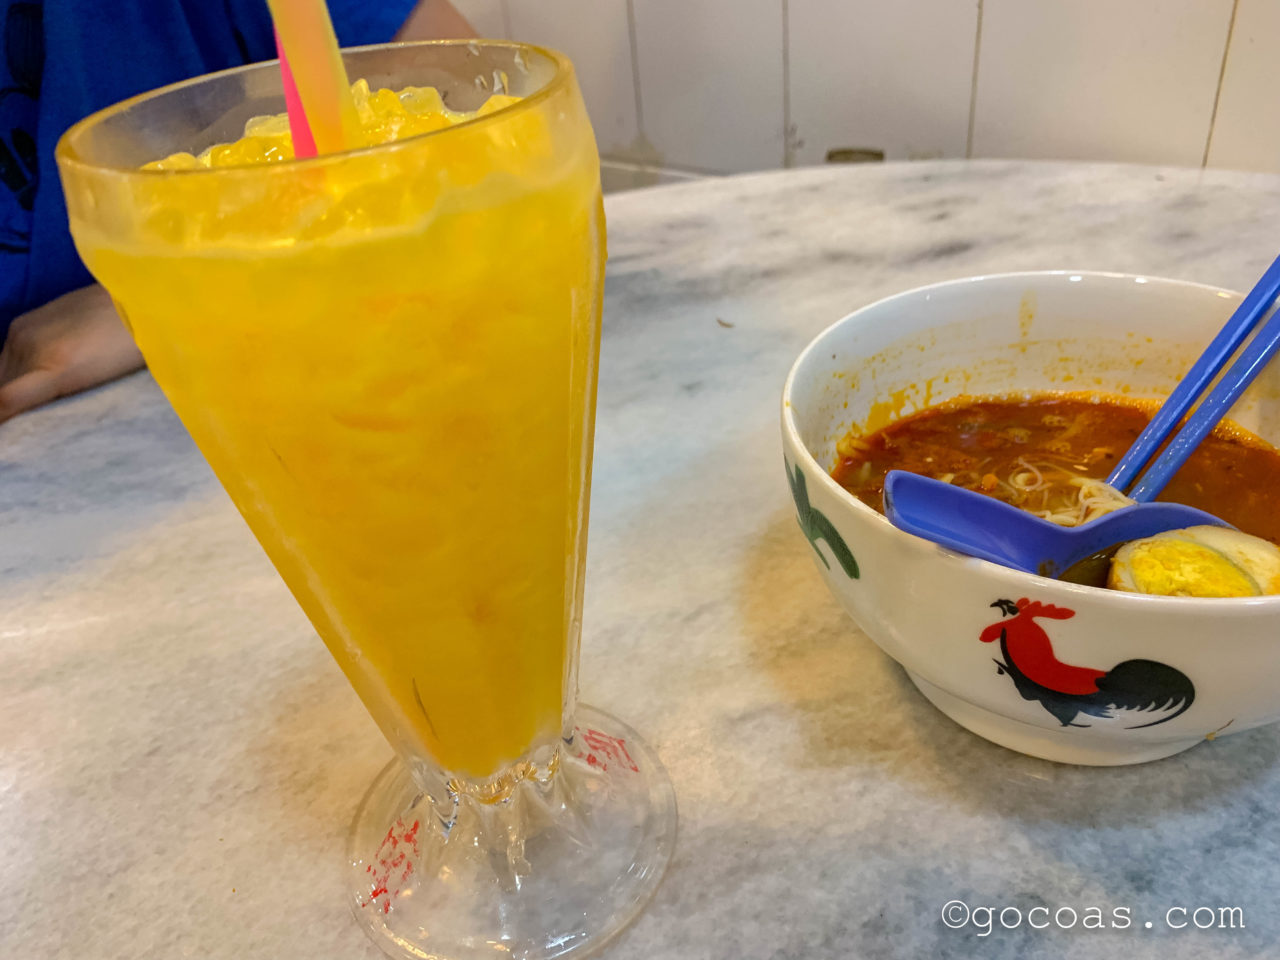 Xi Nan Cafeのラーメンとオレンジジュース